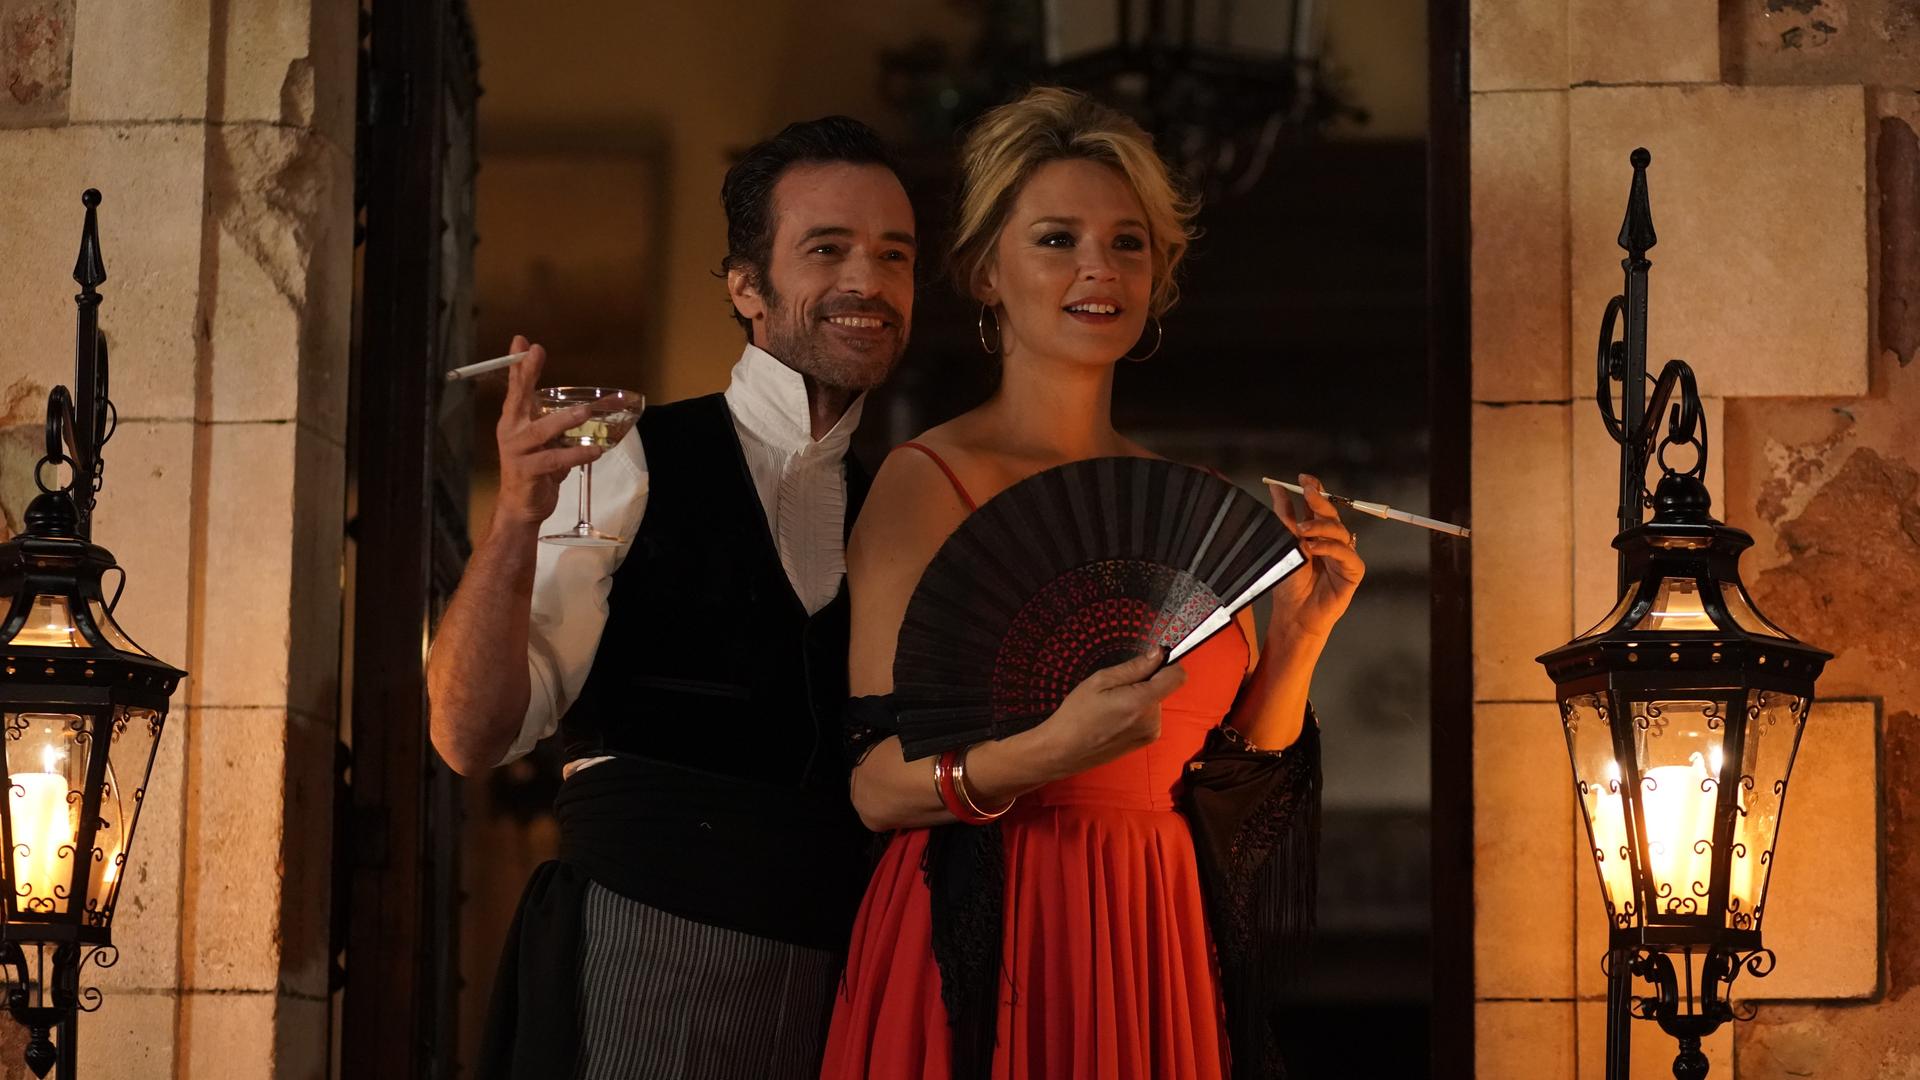 Szene aus "Warten auf Bojangles": Ein Mann im Hemd und Weste hält ein Weinglas und eine Zigarette in der rechten Hand und lacht. Links neben ihm steht eine Frau in einem roten Abendkleid. Sie hält einen Fächer. Beide stehen auf einem Balkon und schauen in die Ferne.